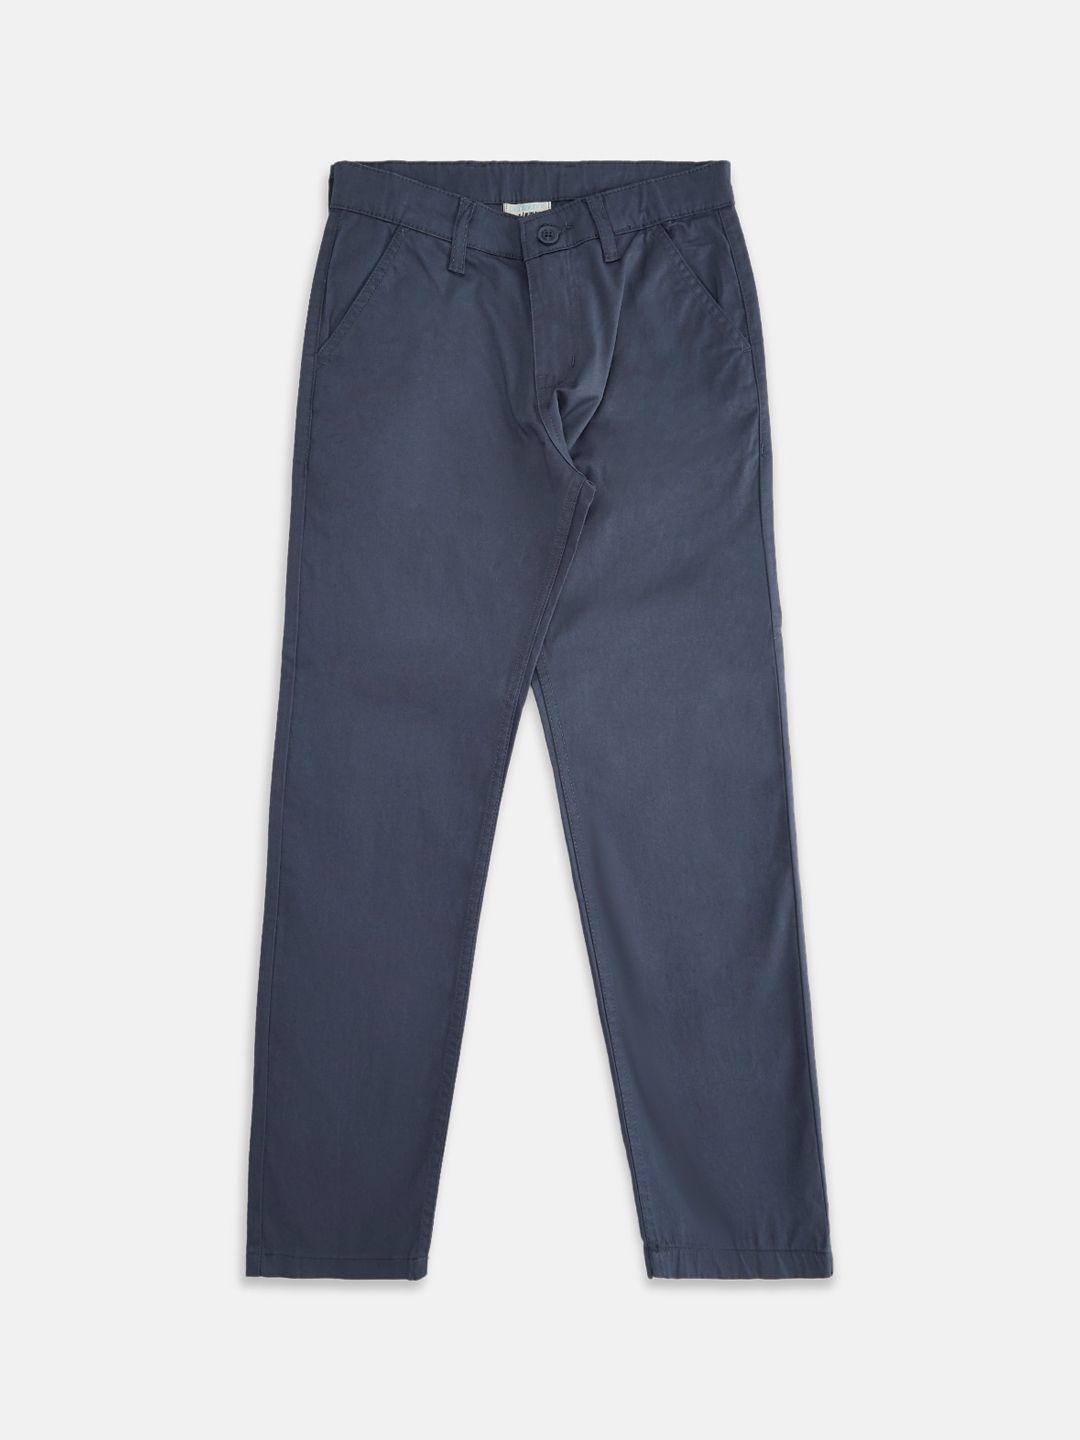 pantaloons junior boys trousers